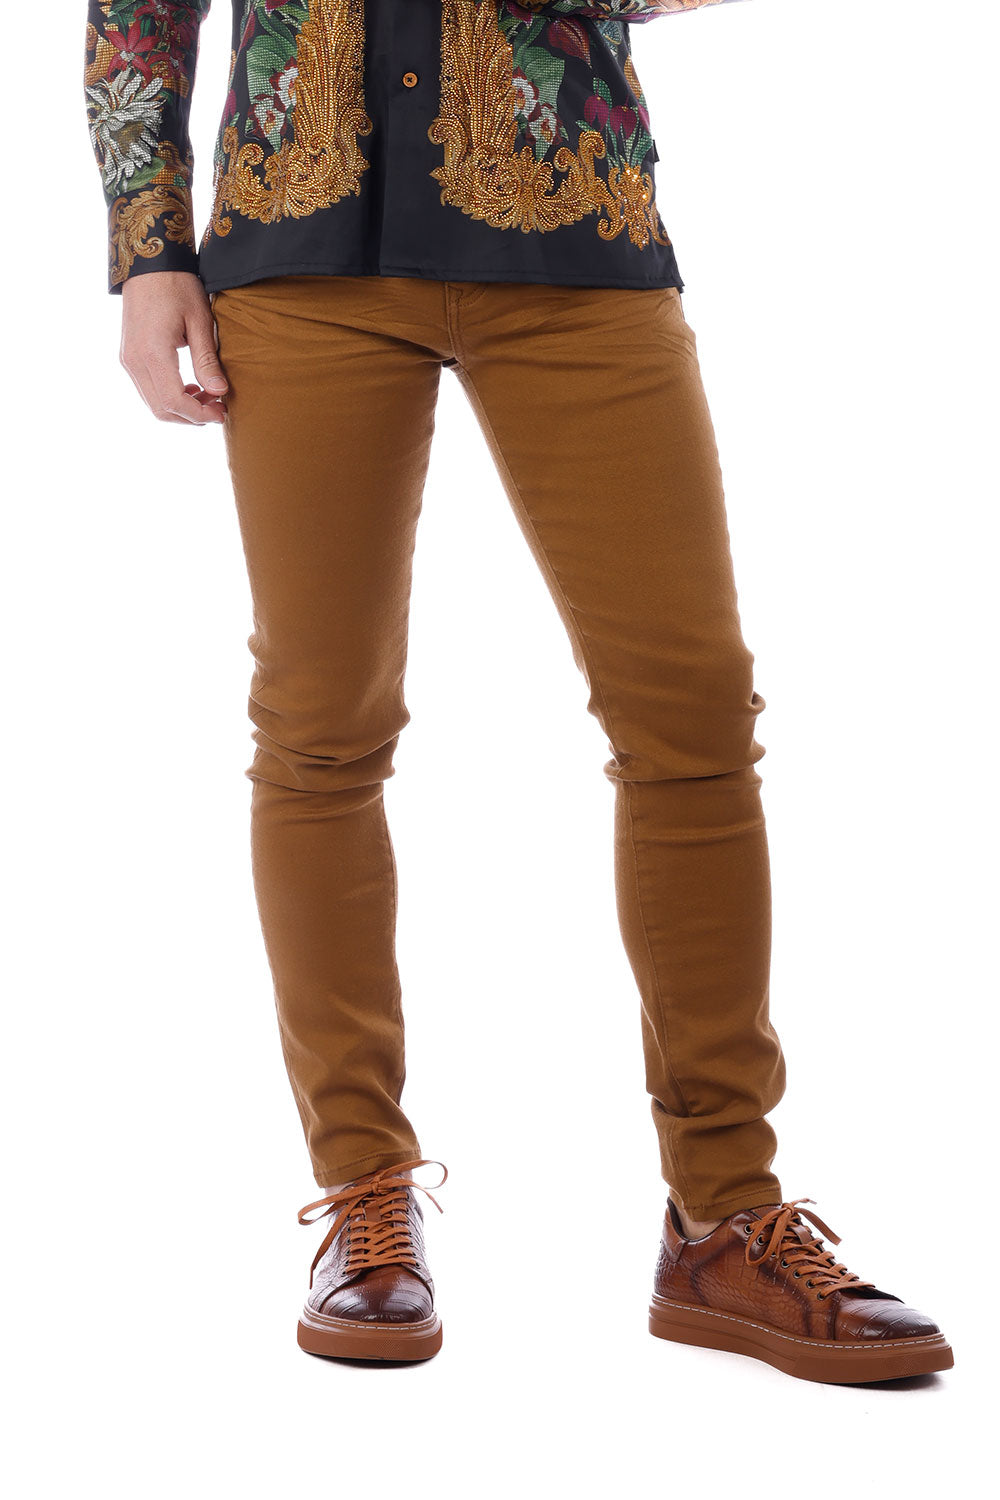 Barabas Men's Skinny Fit Classic Denim Solid Color Jeans 1700 Caramel